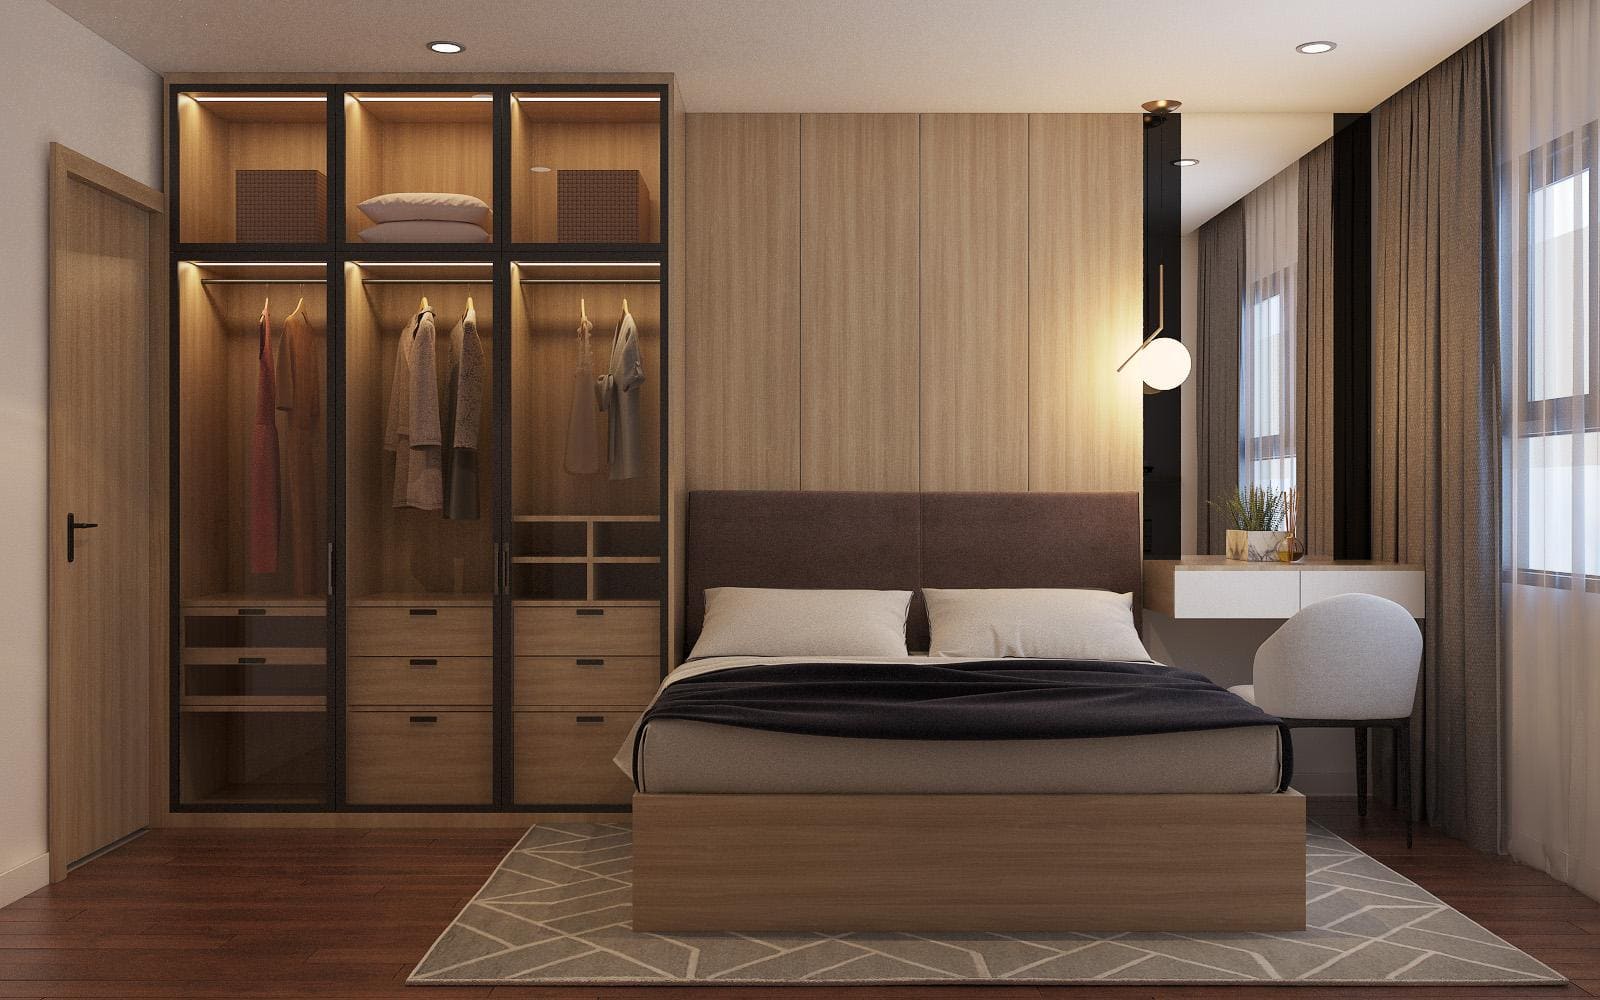 Thiết kế nội thất phòng ngủ đẹp với mẫu tủ quần áo cửa lùa được làm bằng kính bên trong có gắn đèn led cảm biến